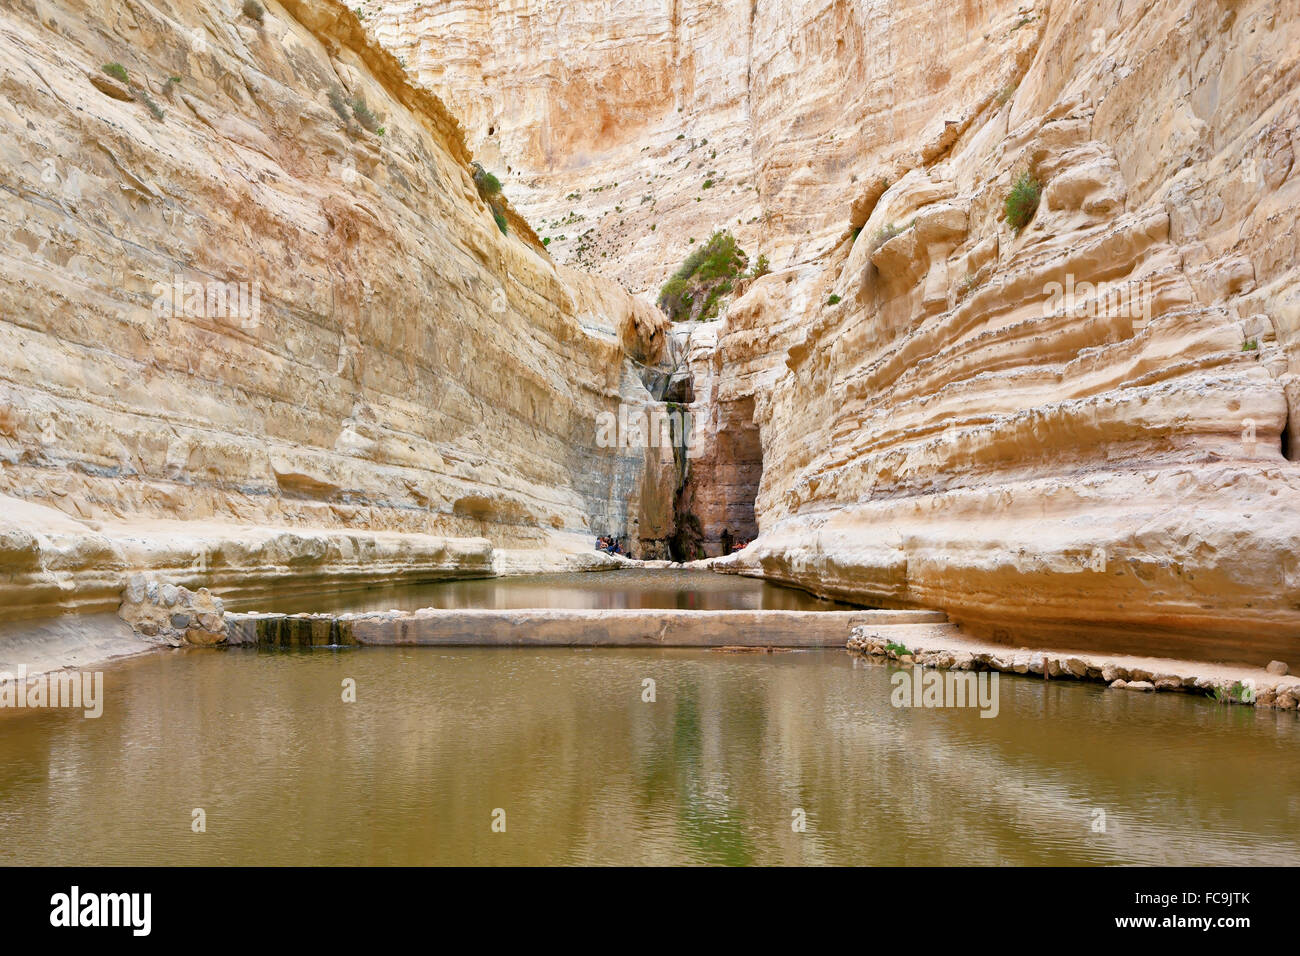 Canyon Ein Avdat in Israele Foto Stock